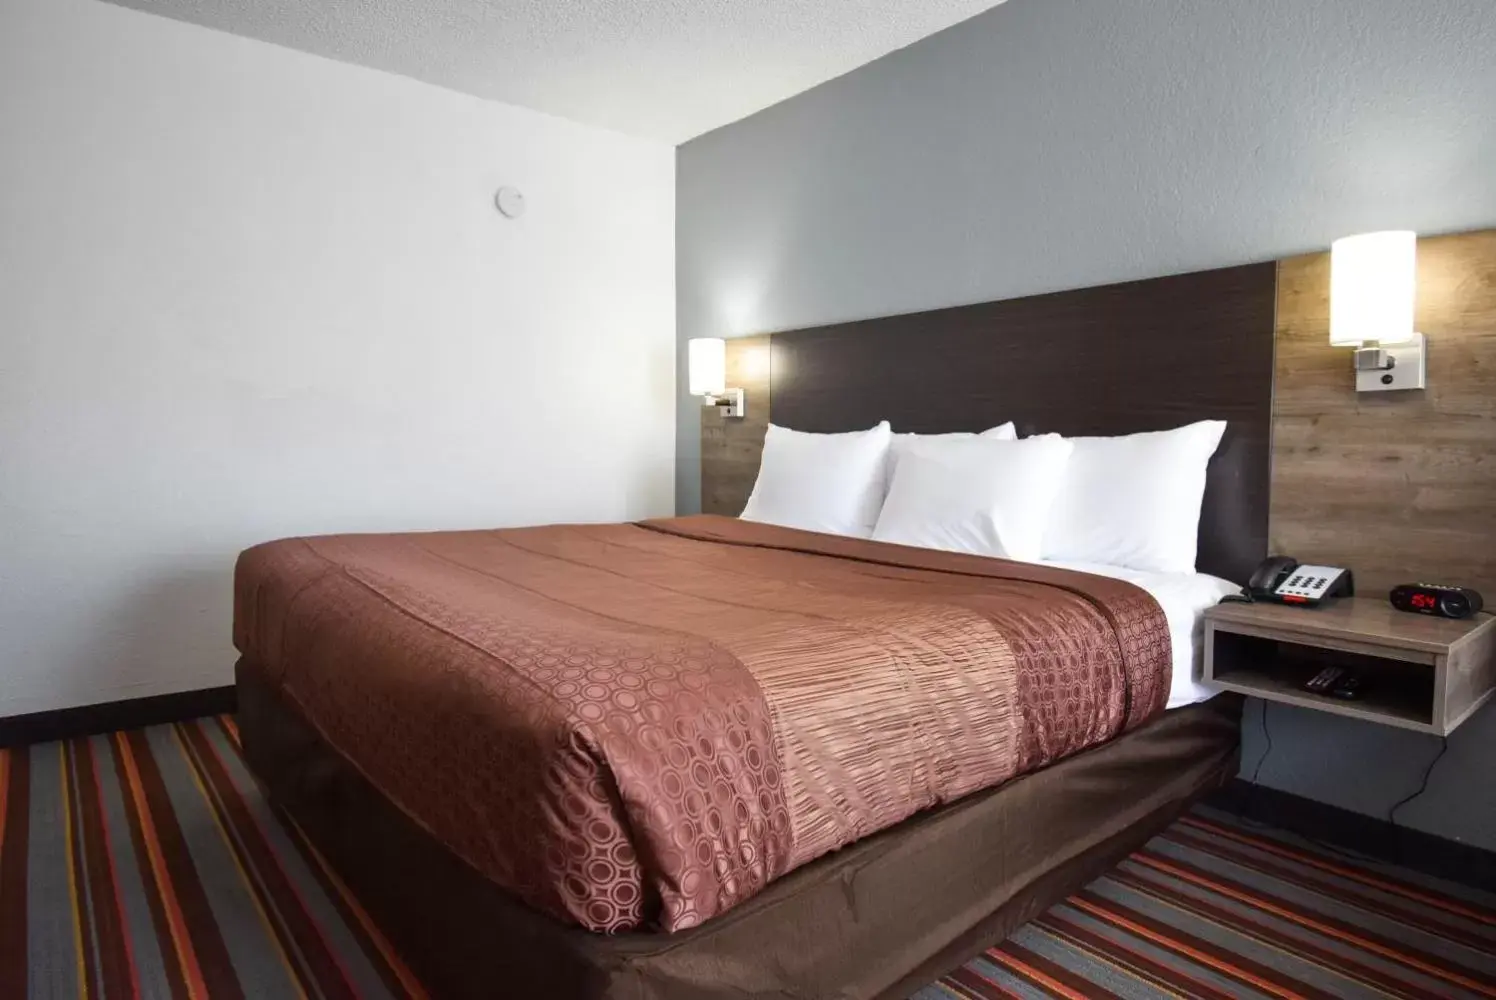 Bed in Quality Inn & Suites Sulphur Springs